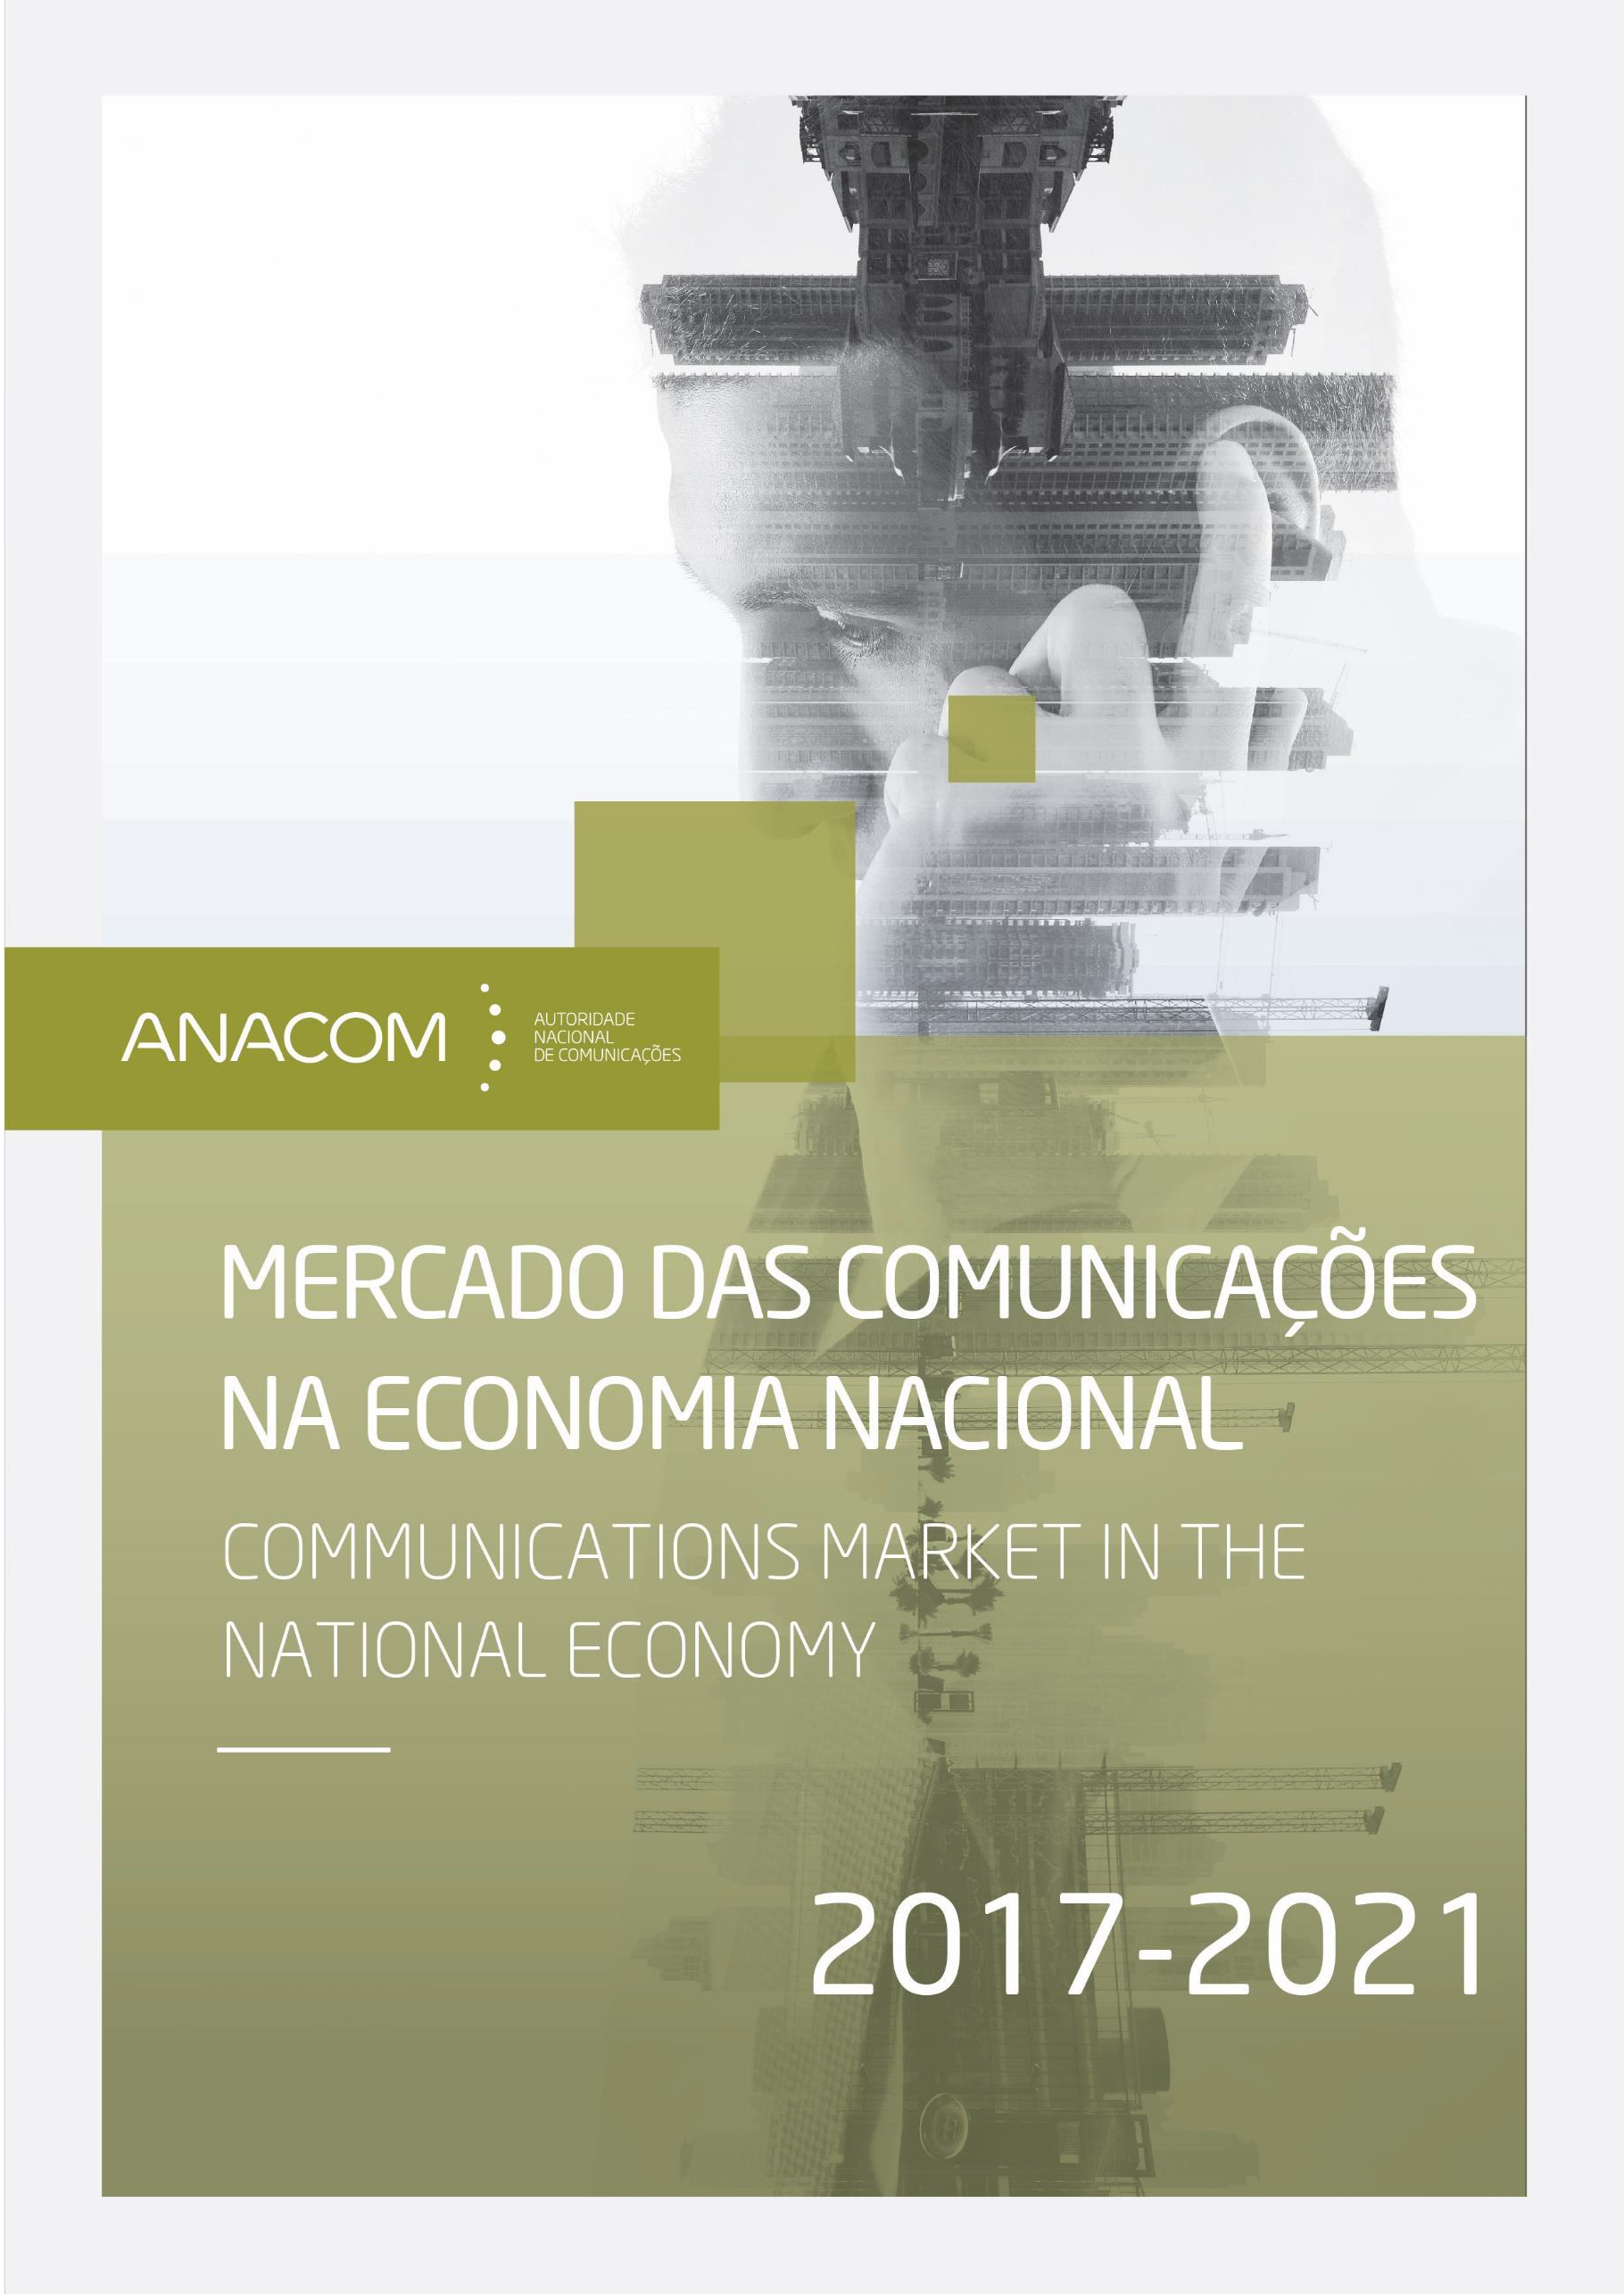 Imagem da publicação - Mercado das Comunicações na Economia Nacional (2017-2021).